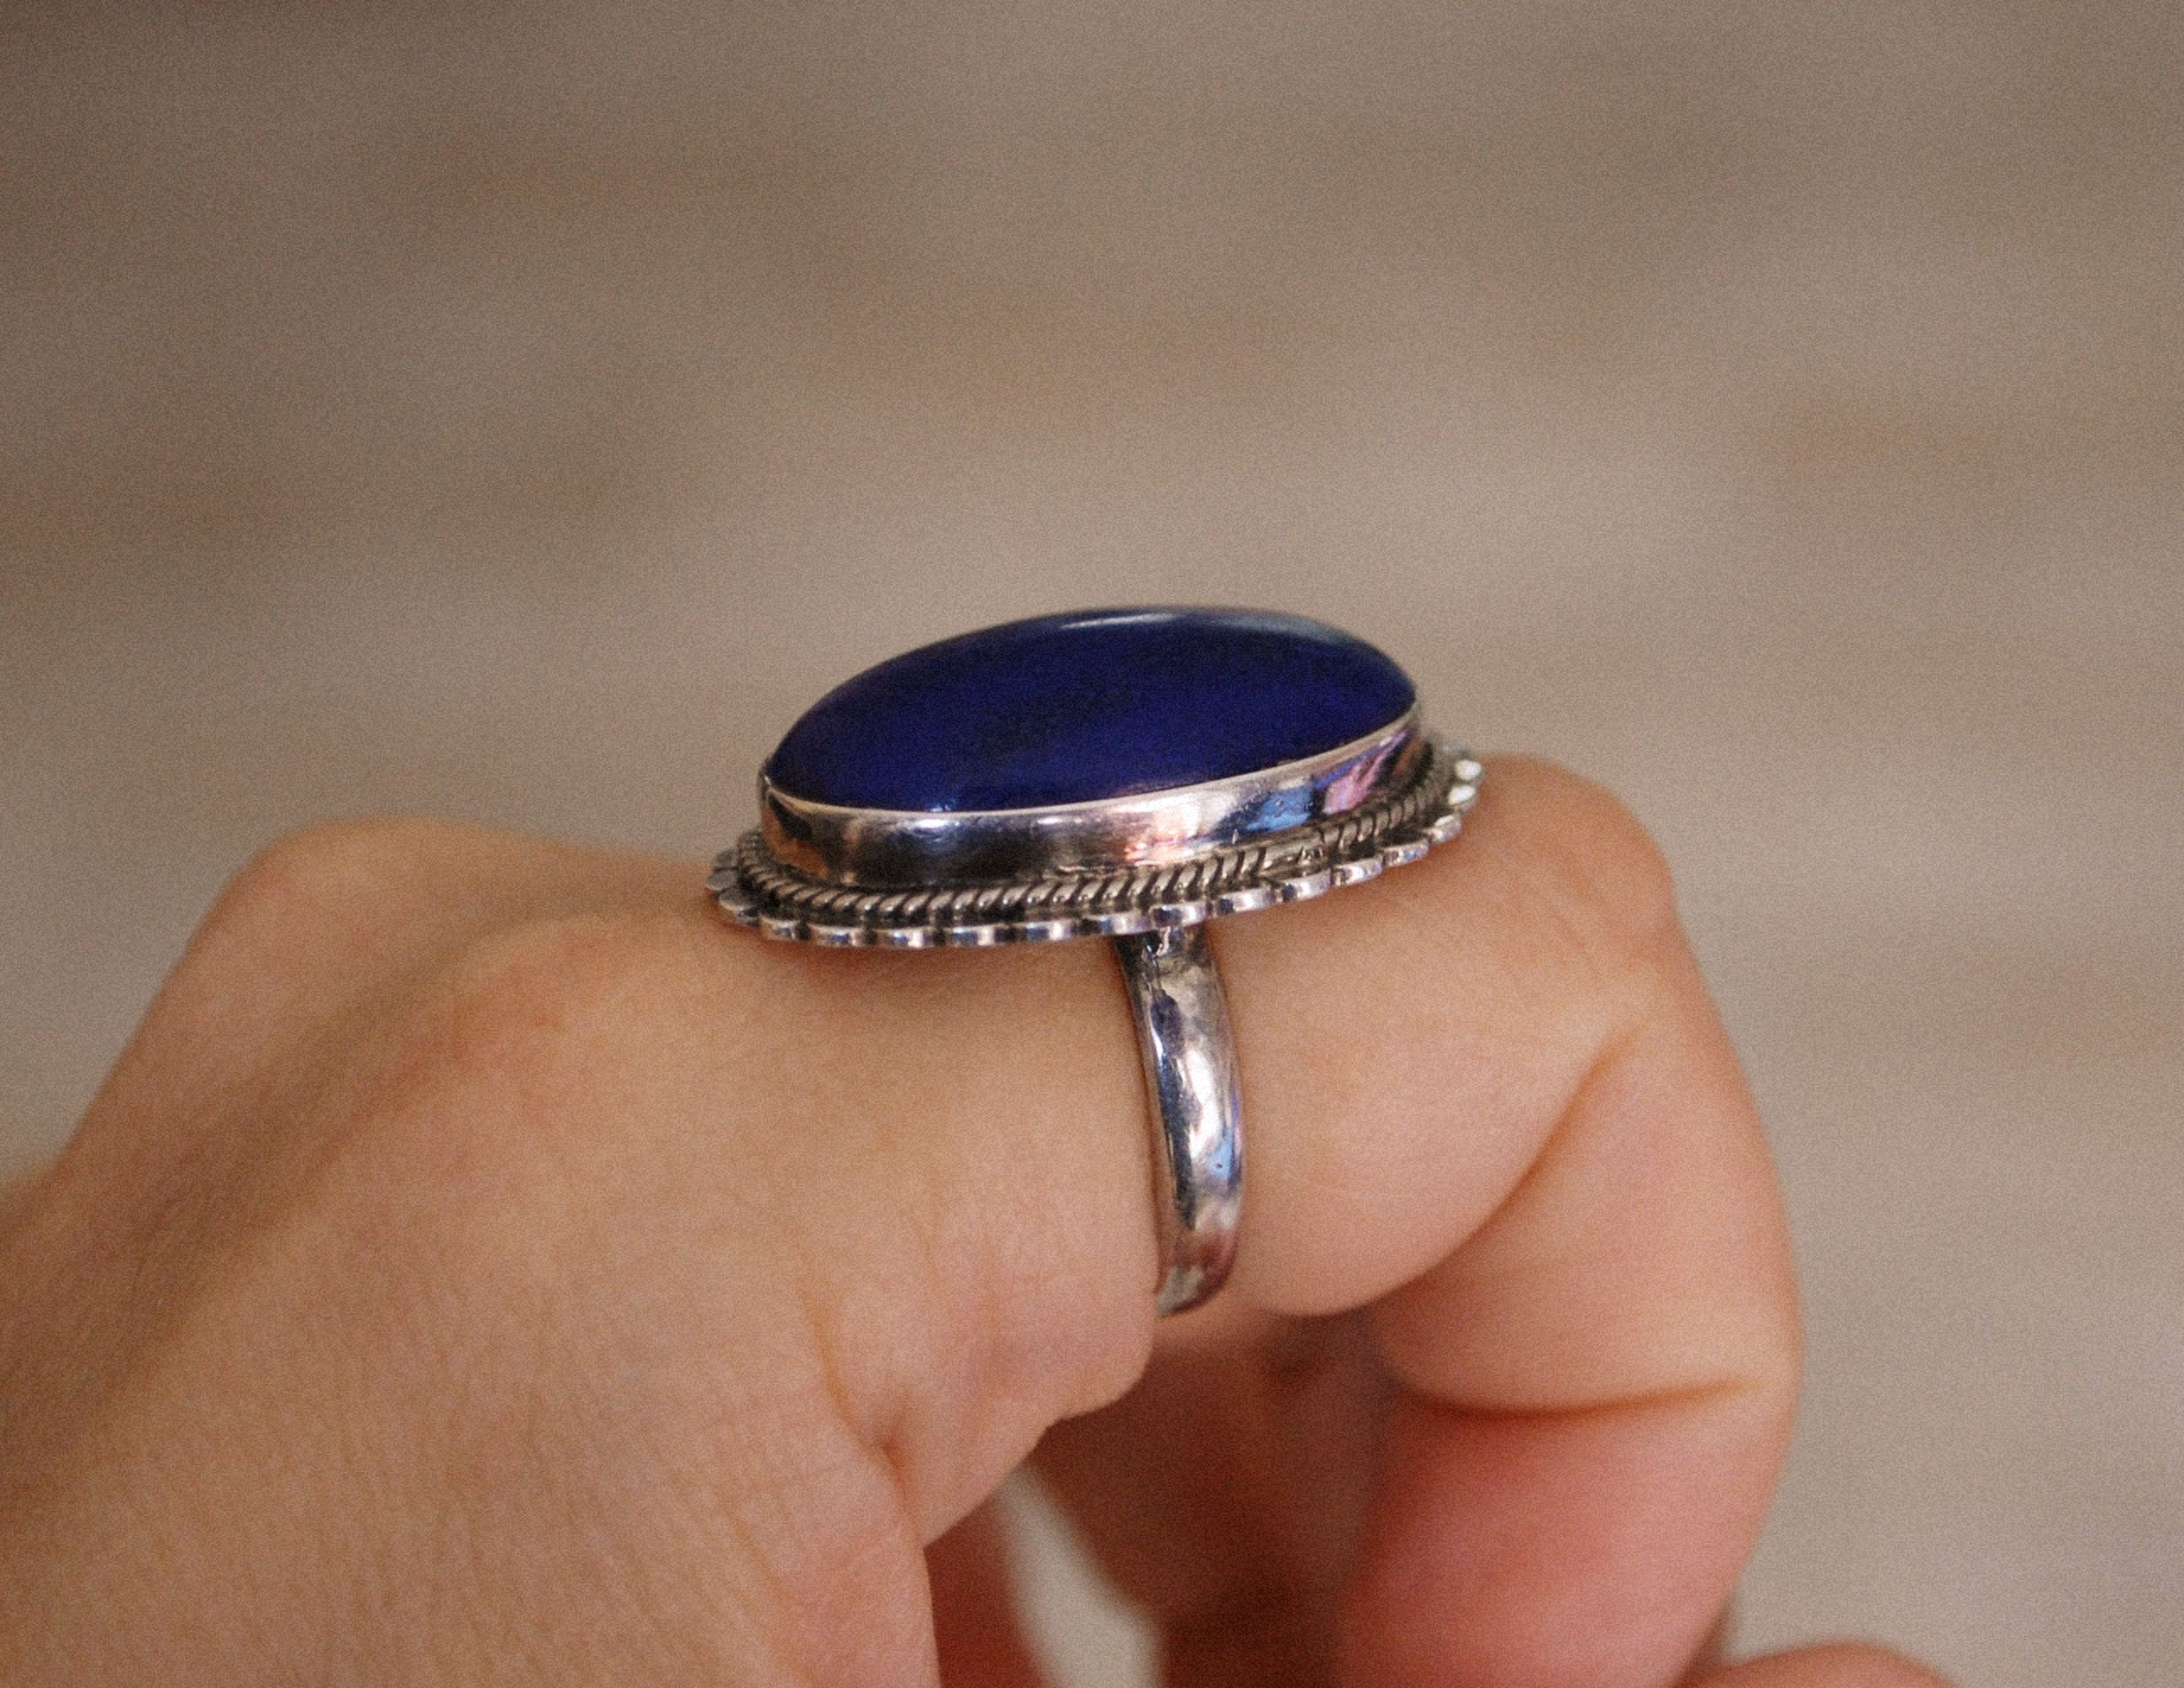 Ethnic Lapis Lazuli Ring from India - Size 6 - Indian Jewelry - India Ring - Lapis Lazuli Ring - Ethnic Ring